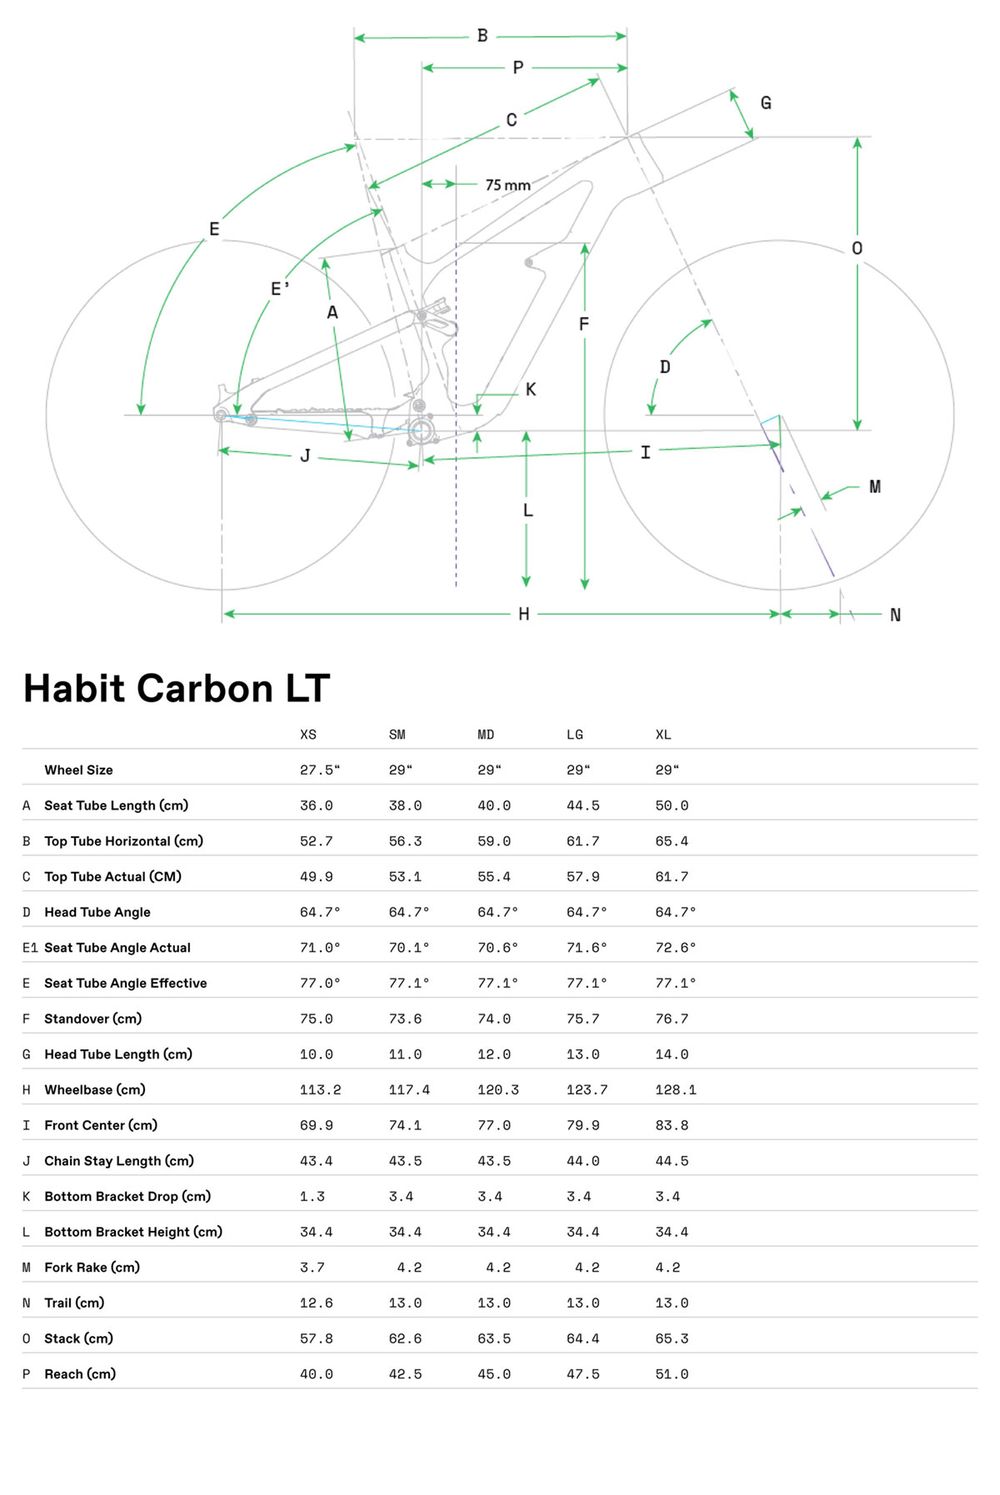 Habit Carbon LT 1 - 